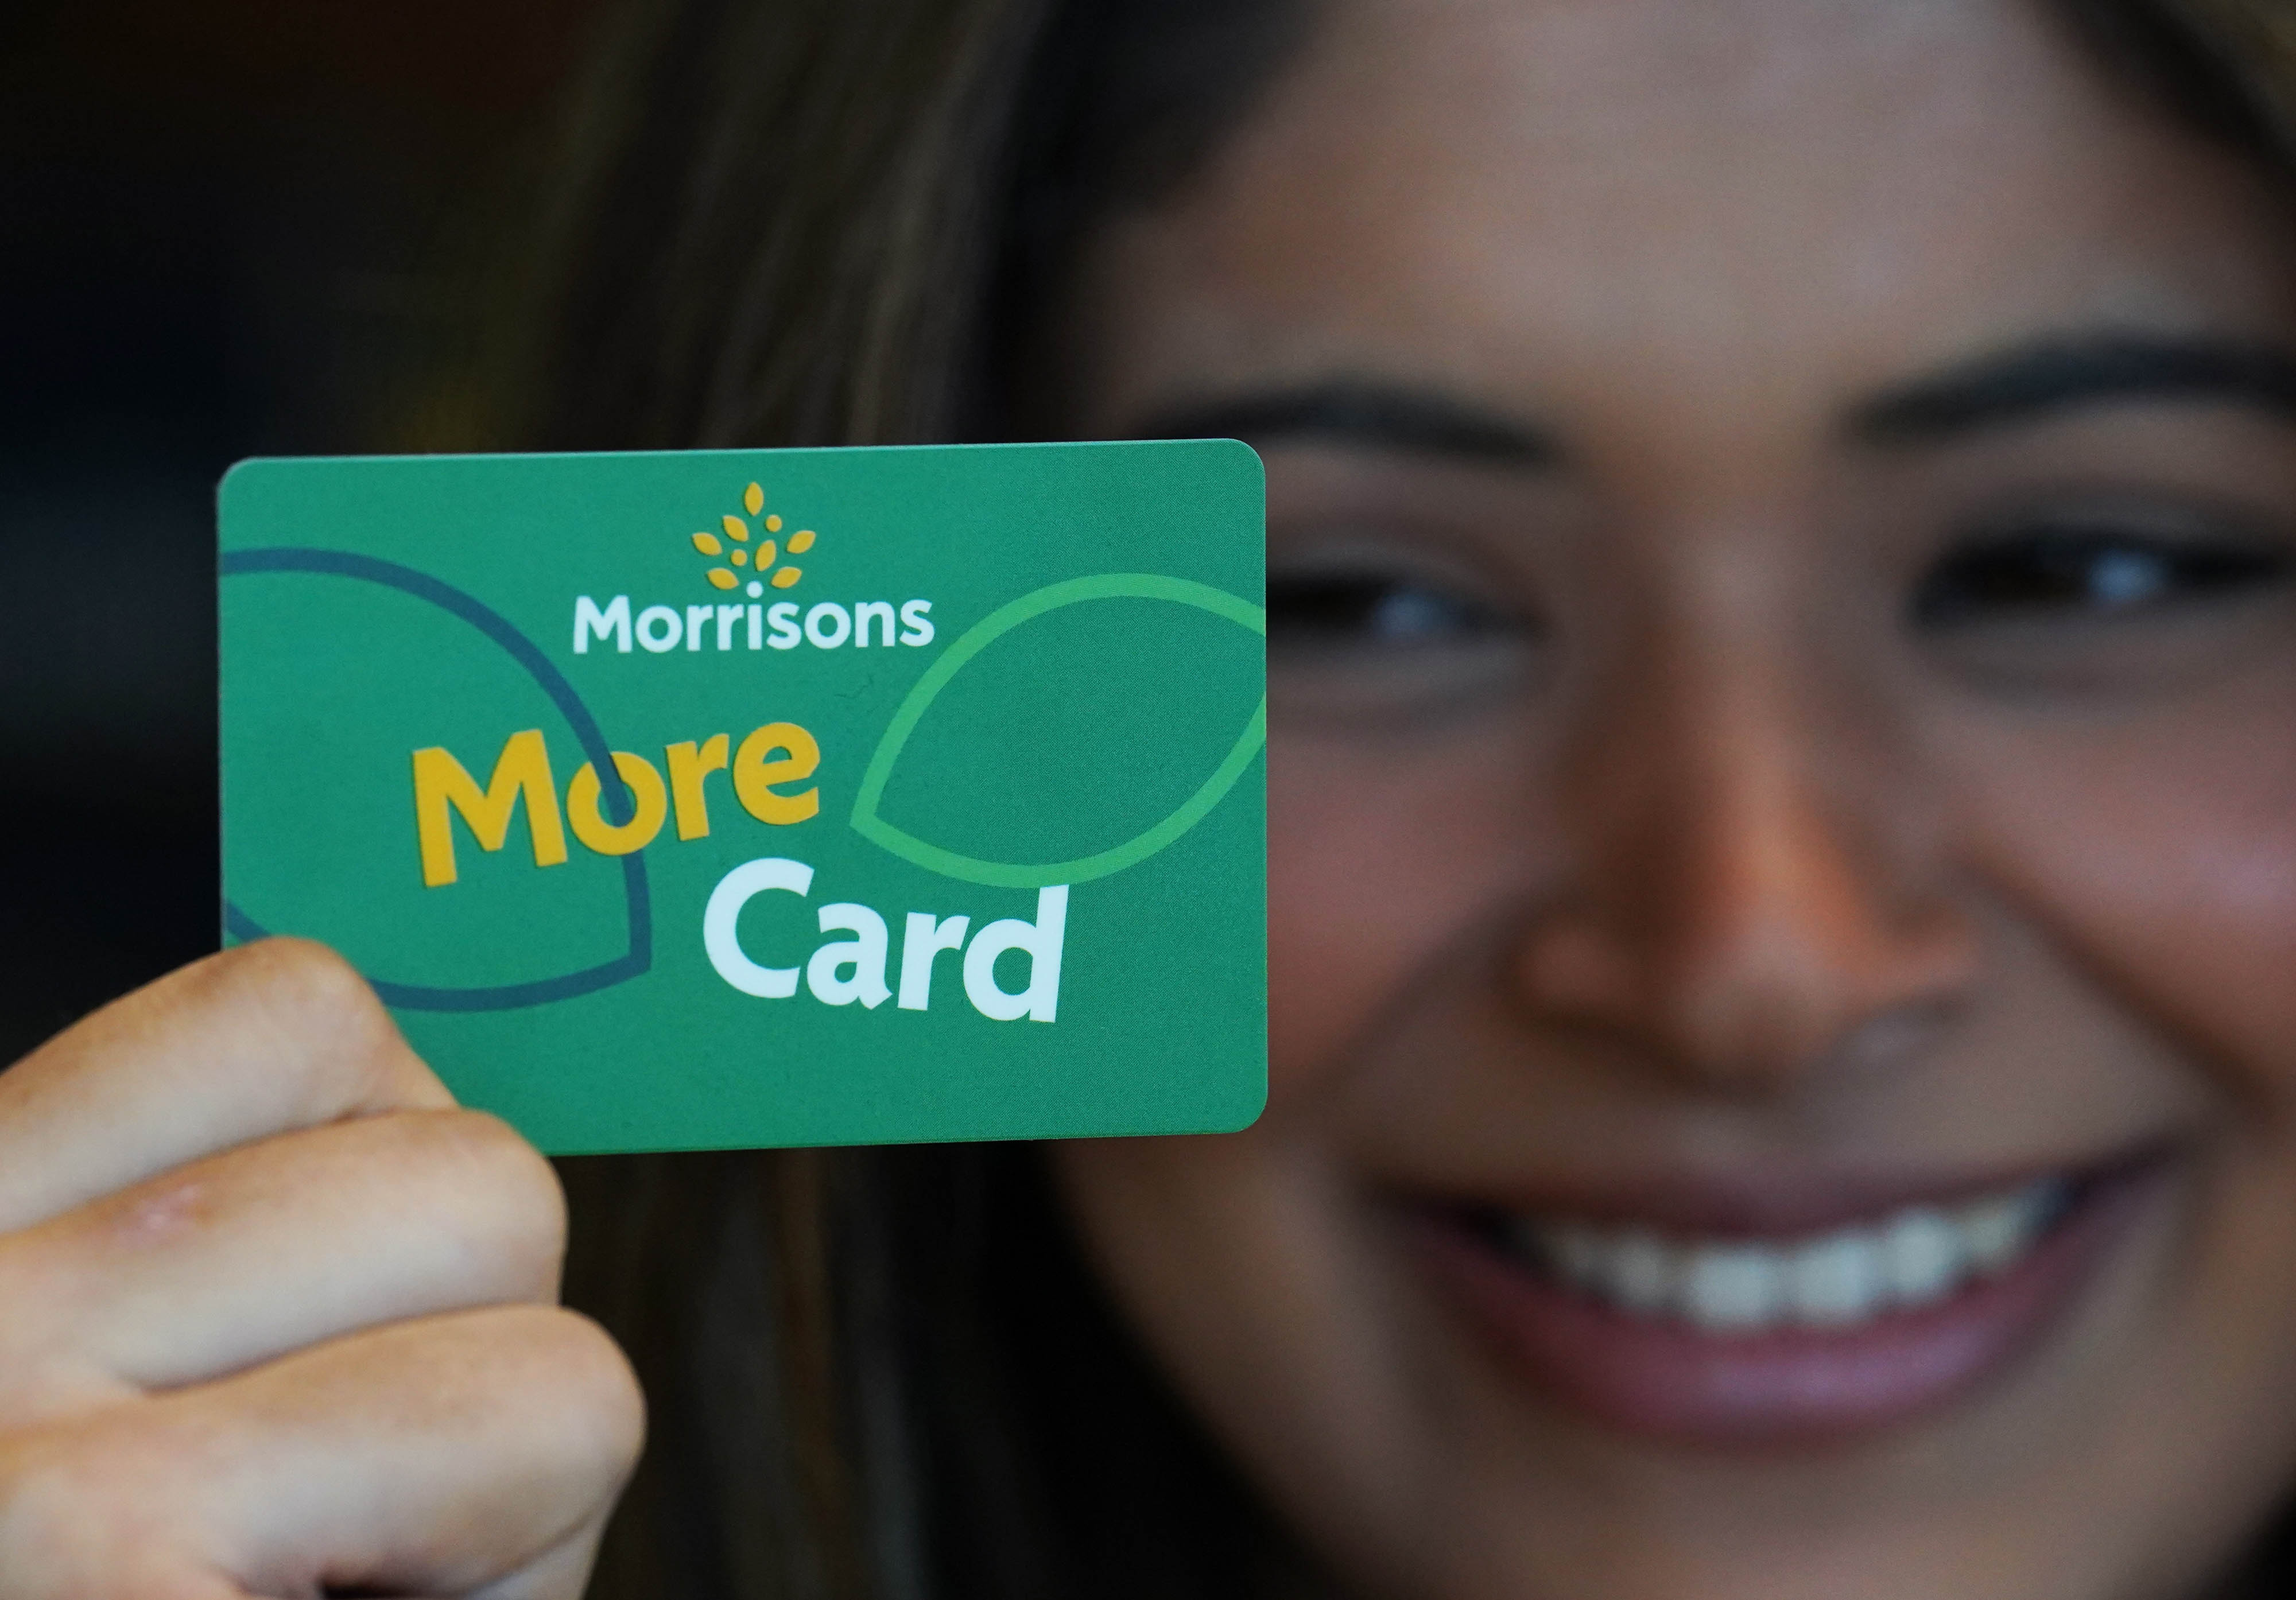 Das Treueprogramm Morrisons More Card bietet Kunden zahlreiche Angebote